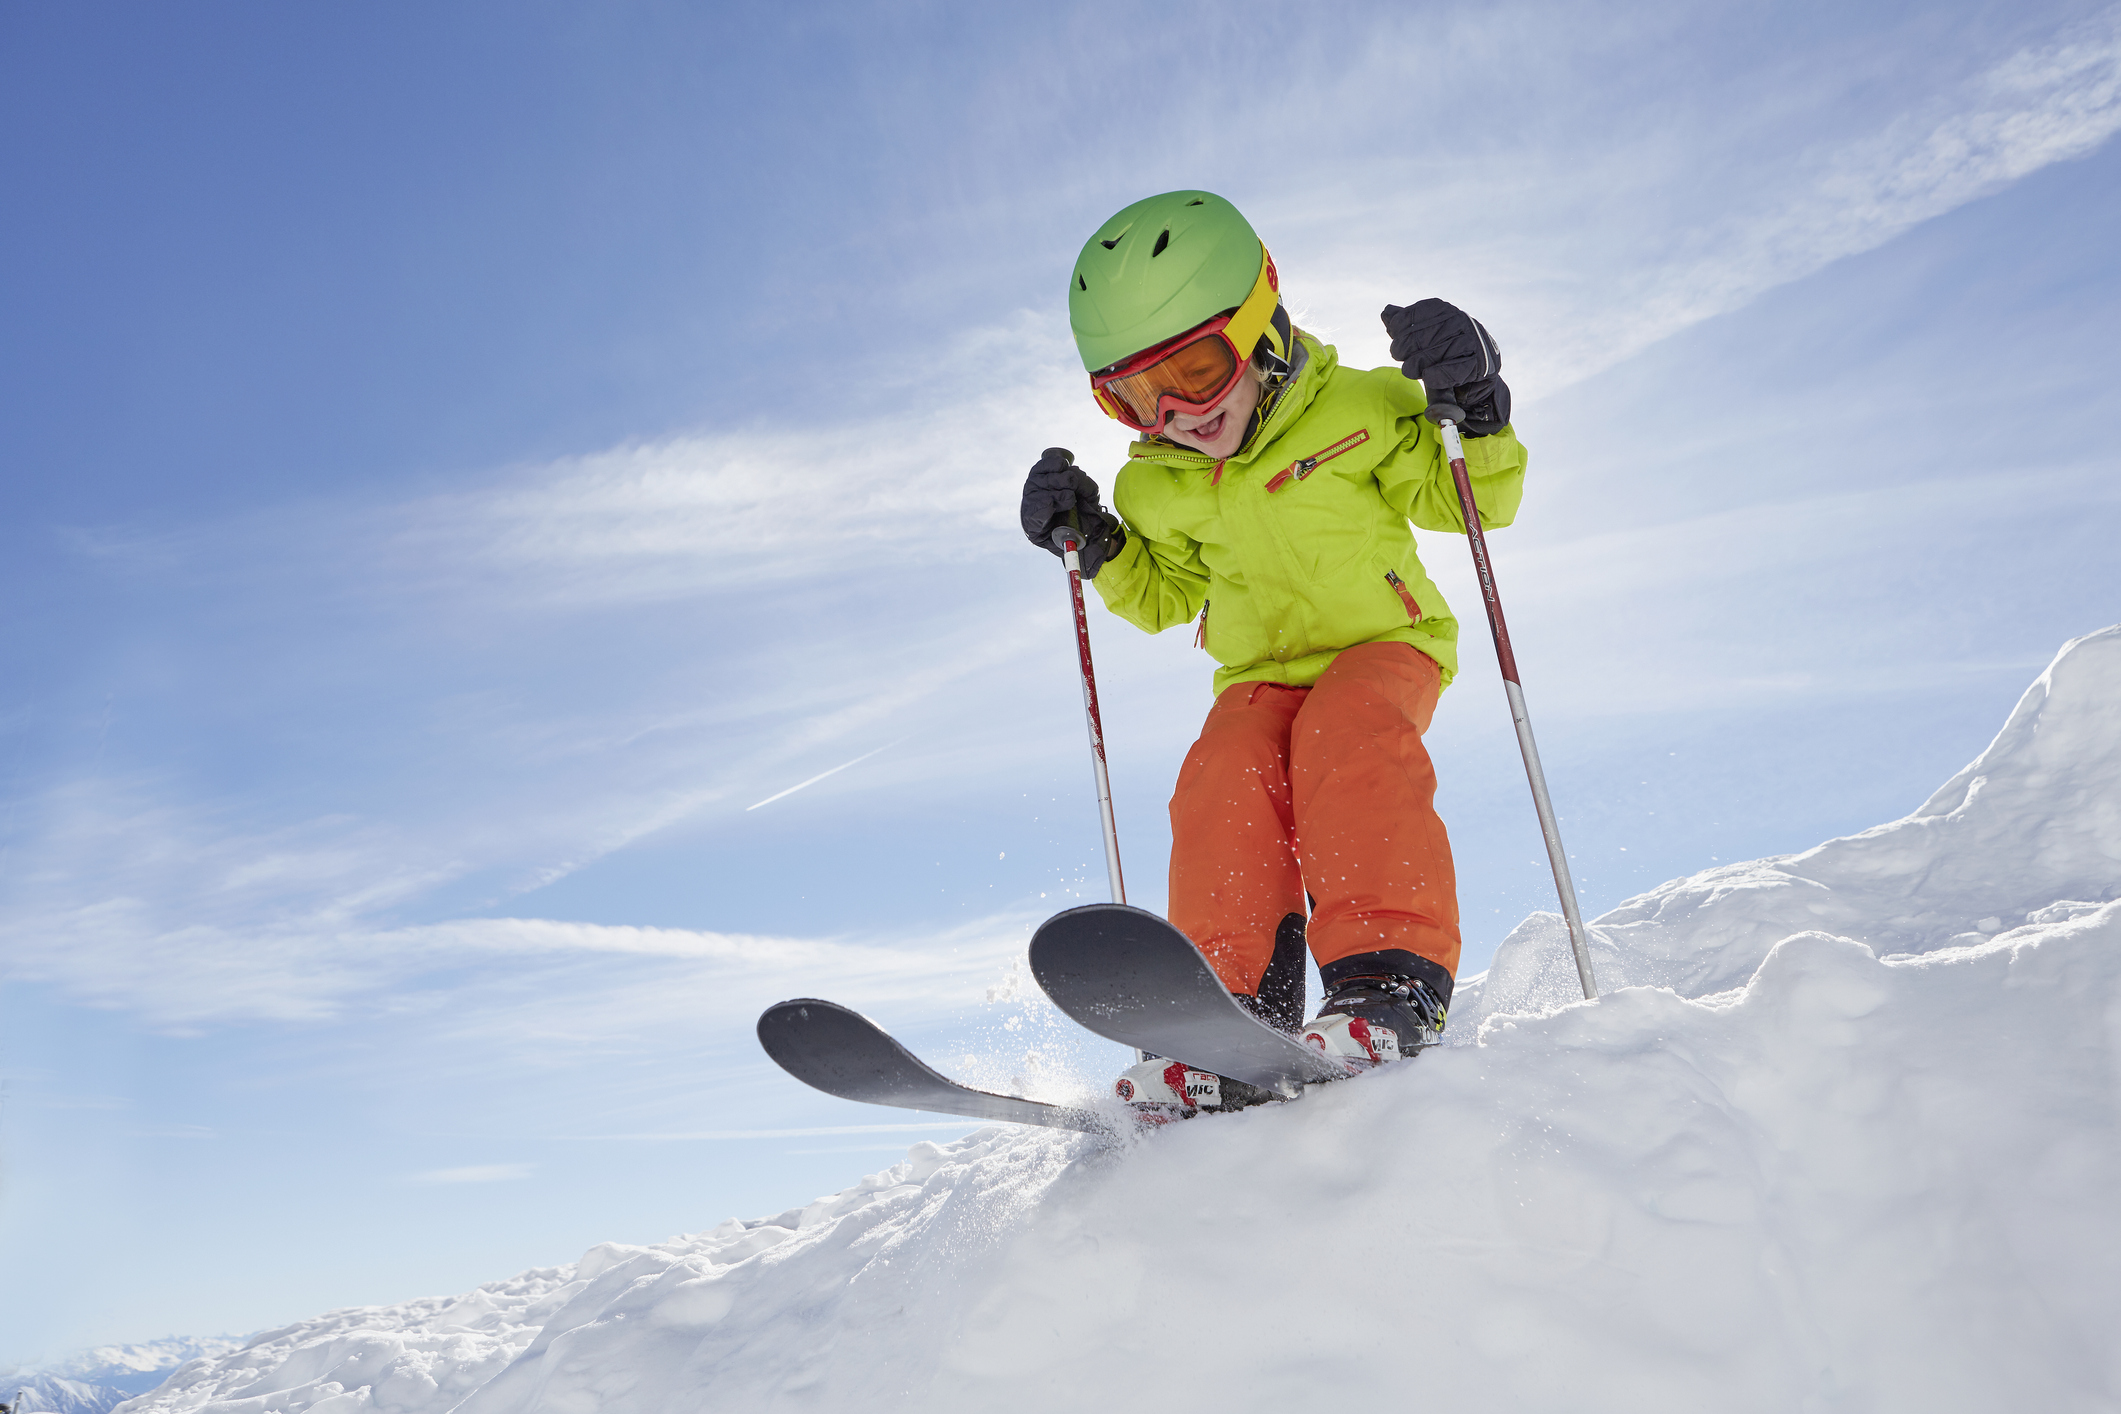 Jakie narty dla dziecka wybrać? Długość i rodzaje nart - Dziecko